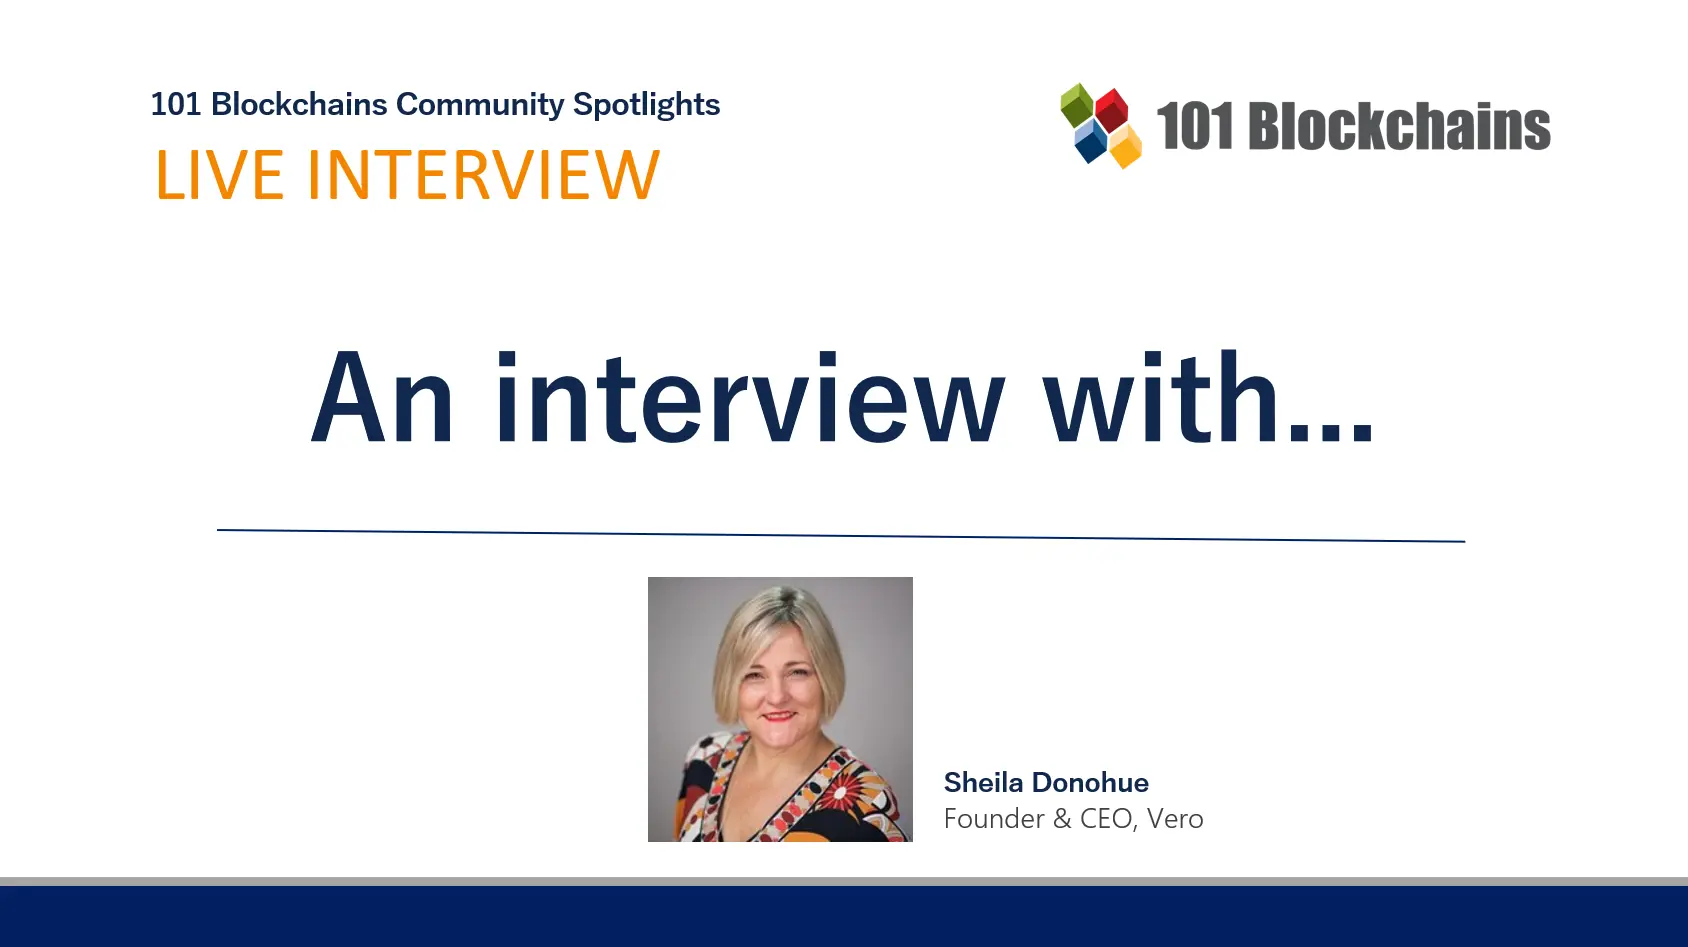 Community Spotlight: Sheila Donohue, Founder & CEO, Vero